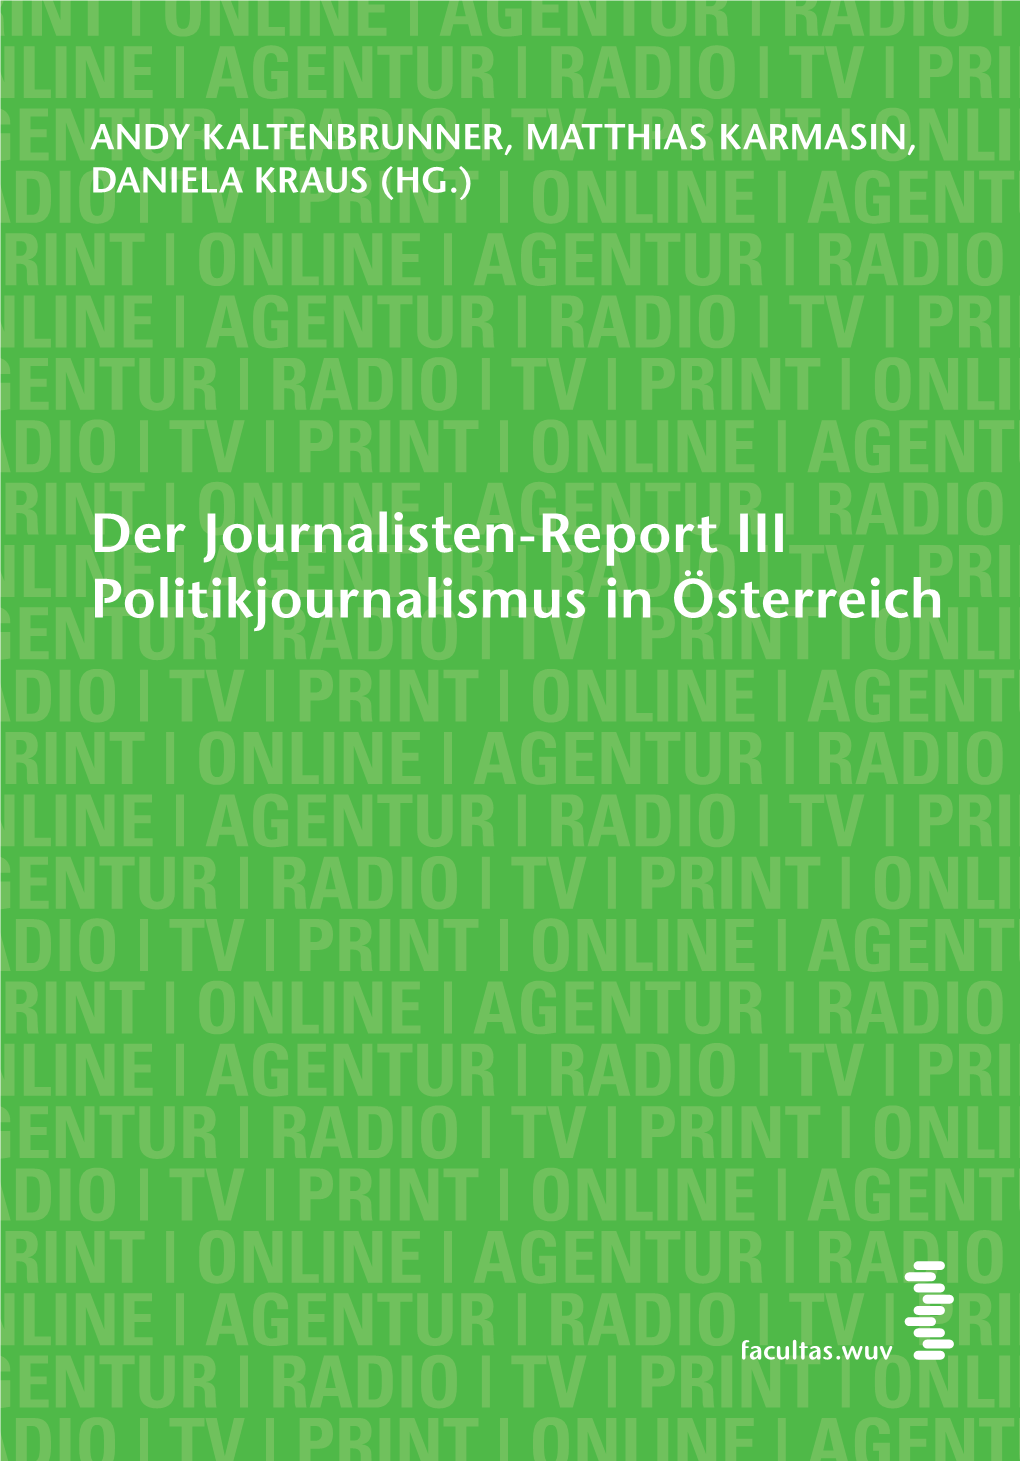 Radio | Tv | Print | Online Agentur